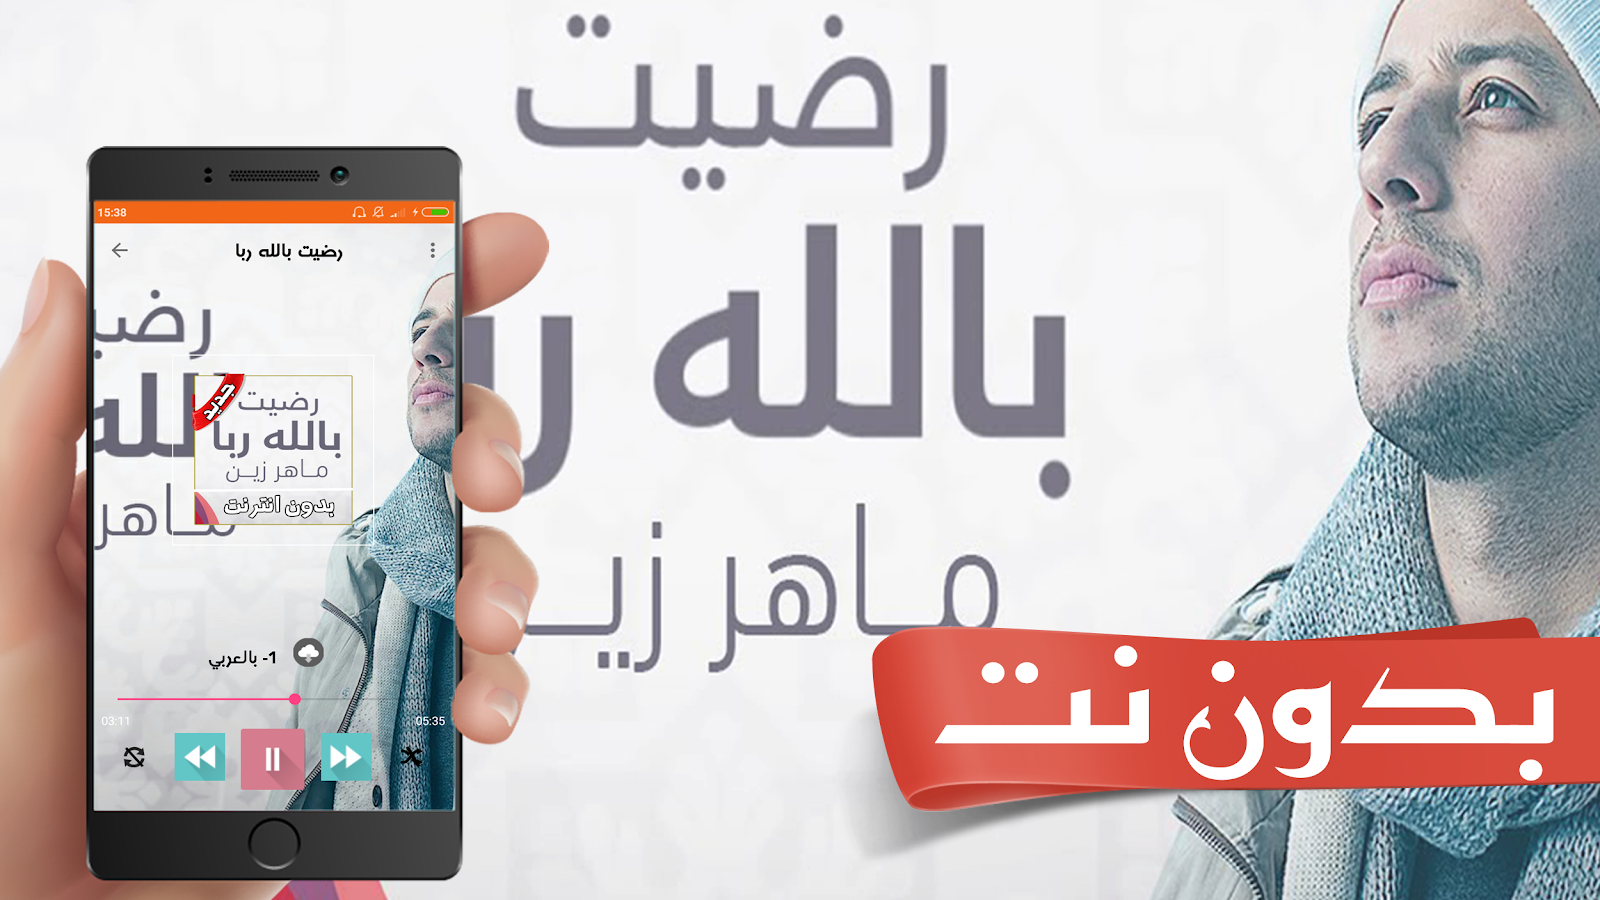 رضيت بالله ربا ماهر زين بدون نت 3 0 Apk Download Android